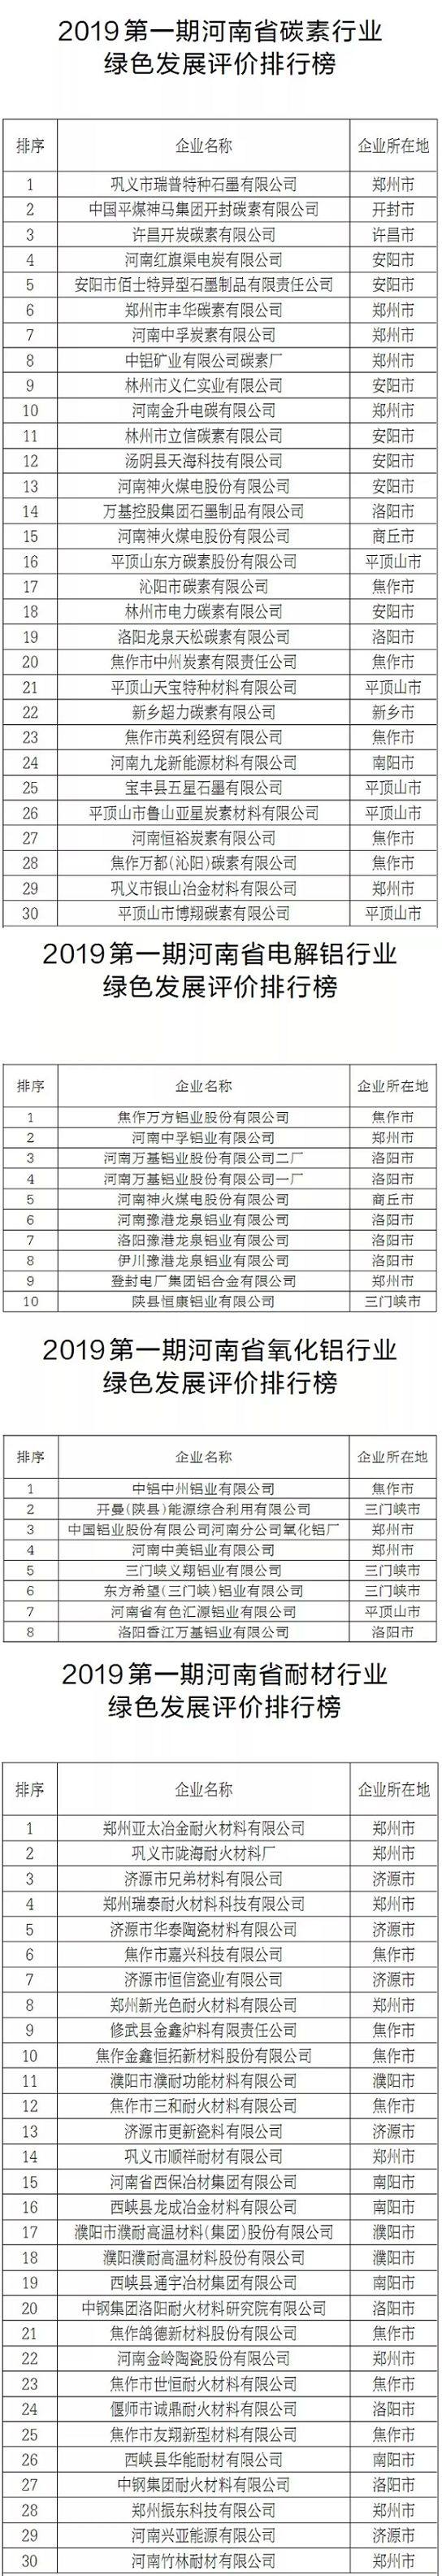 河南省公布碳素、電解鋁、氧化鋁、耐材等行業企業綠色發展評價排行